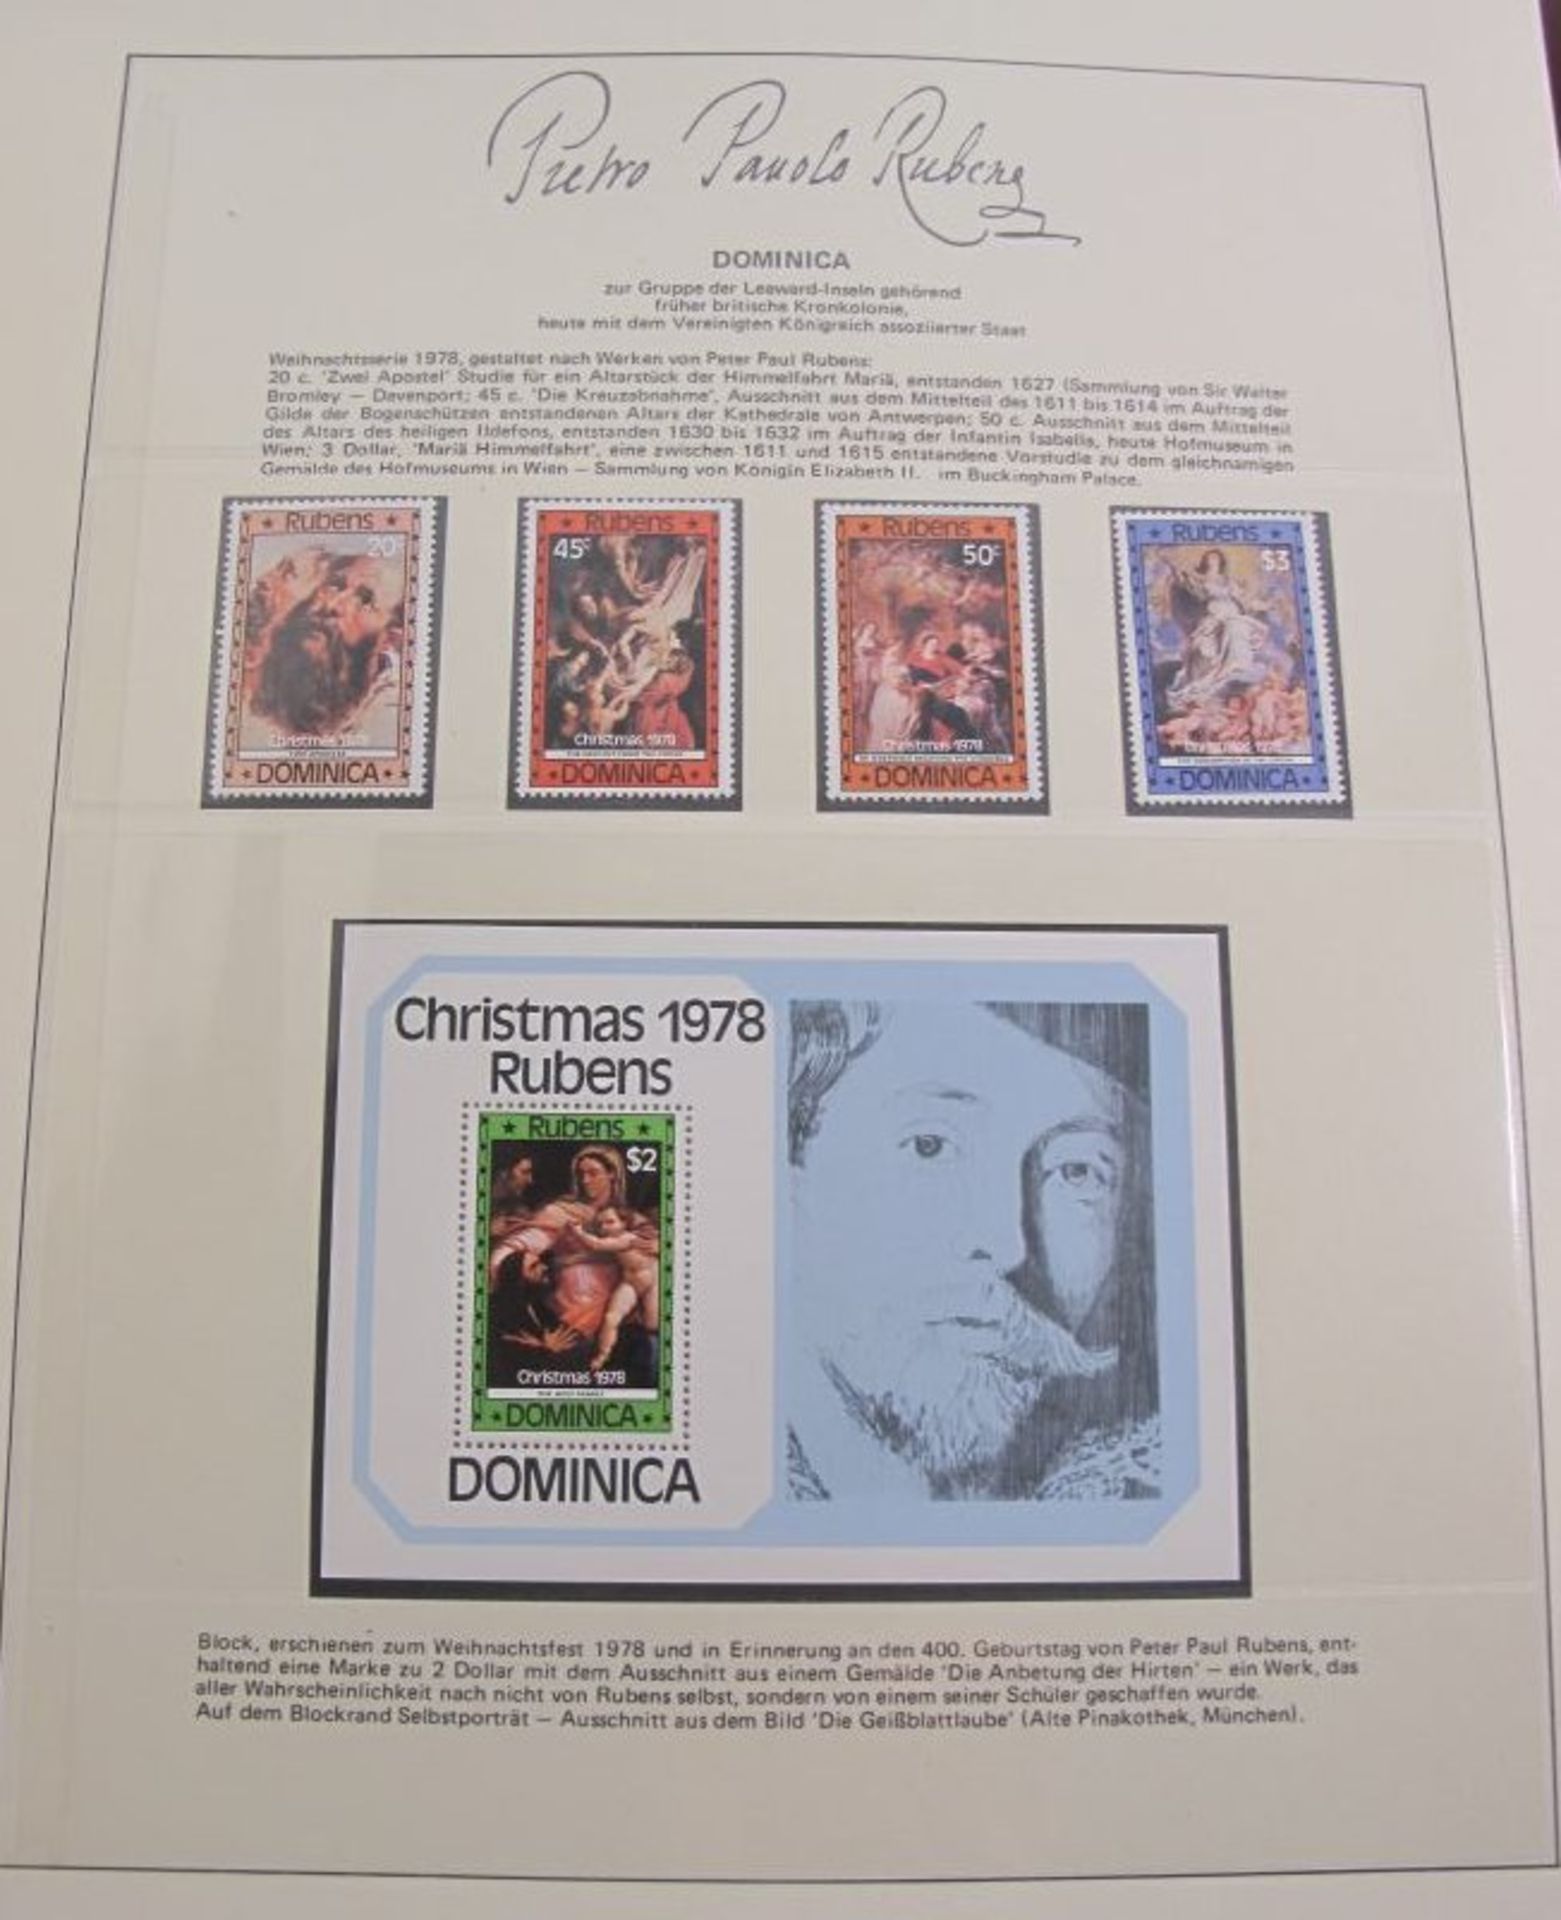 Sammlung von Marken in 2 Alben "Peter Paul Rubens". - Bild 5 aus 5